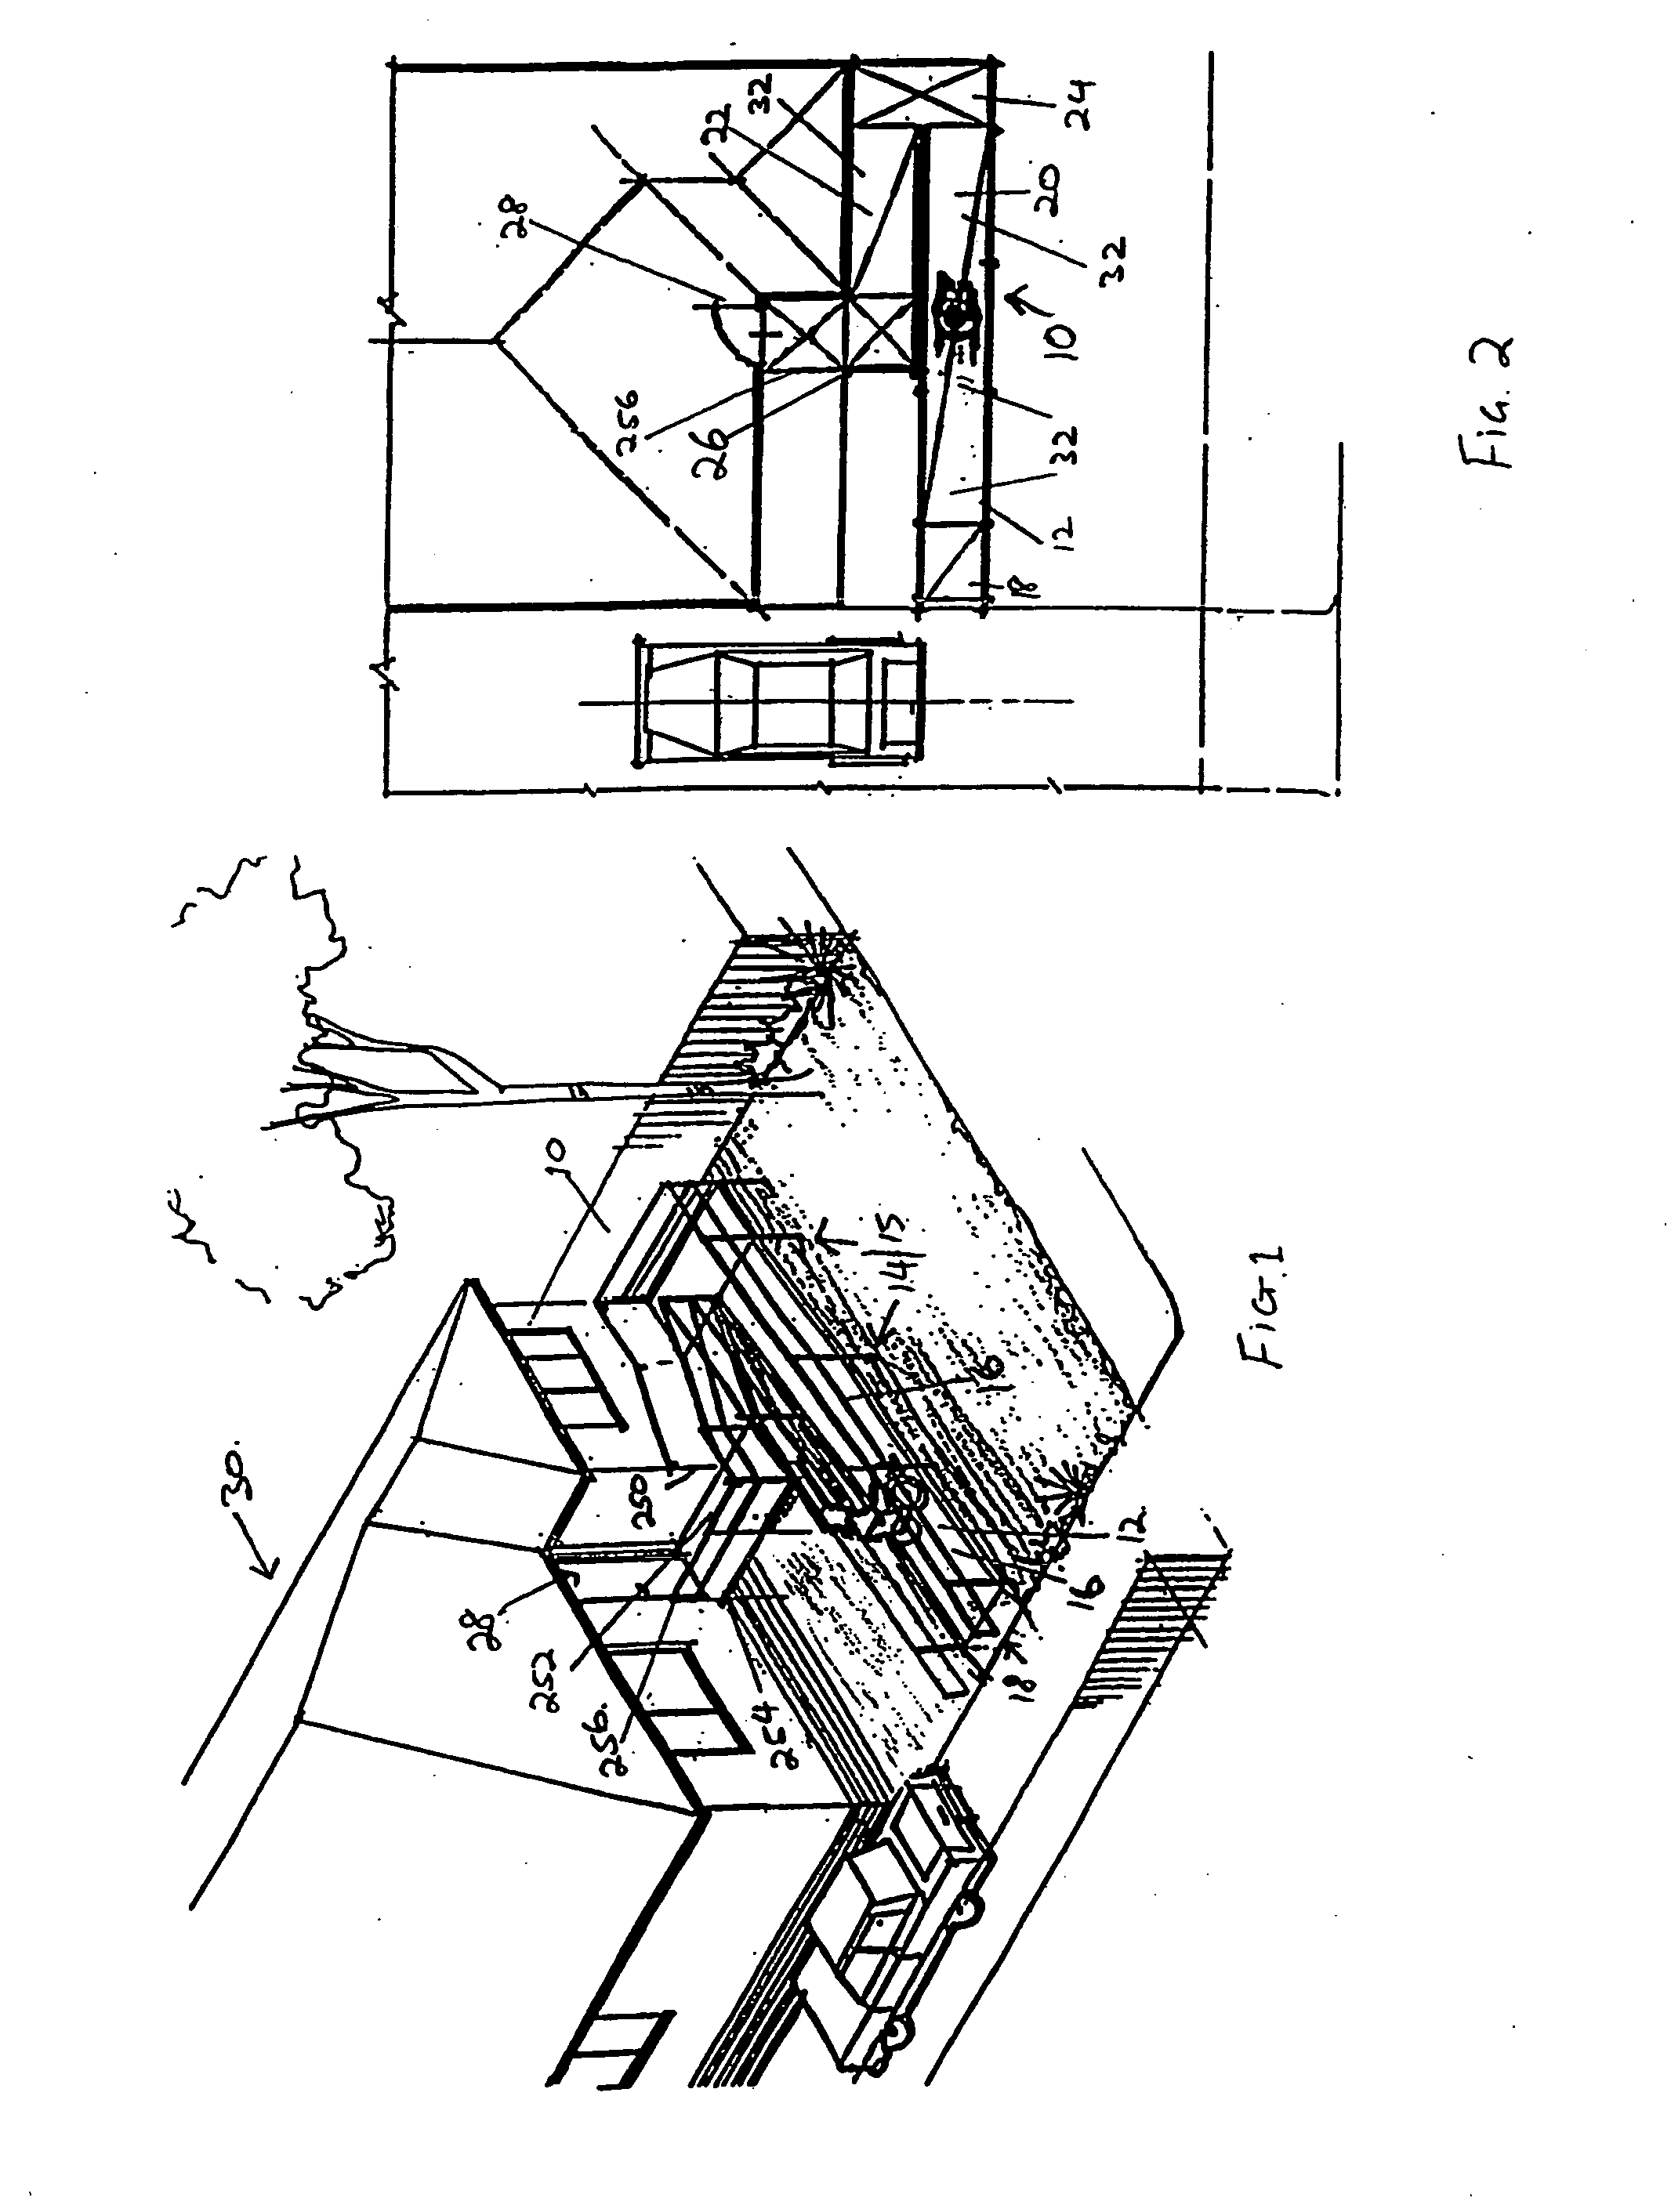 Modular platform, walkway or ramp